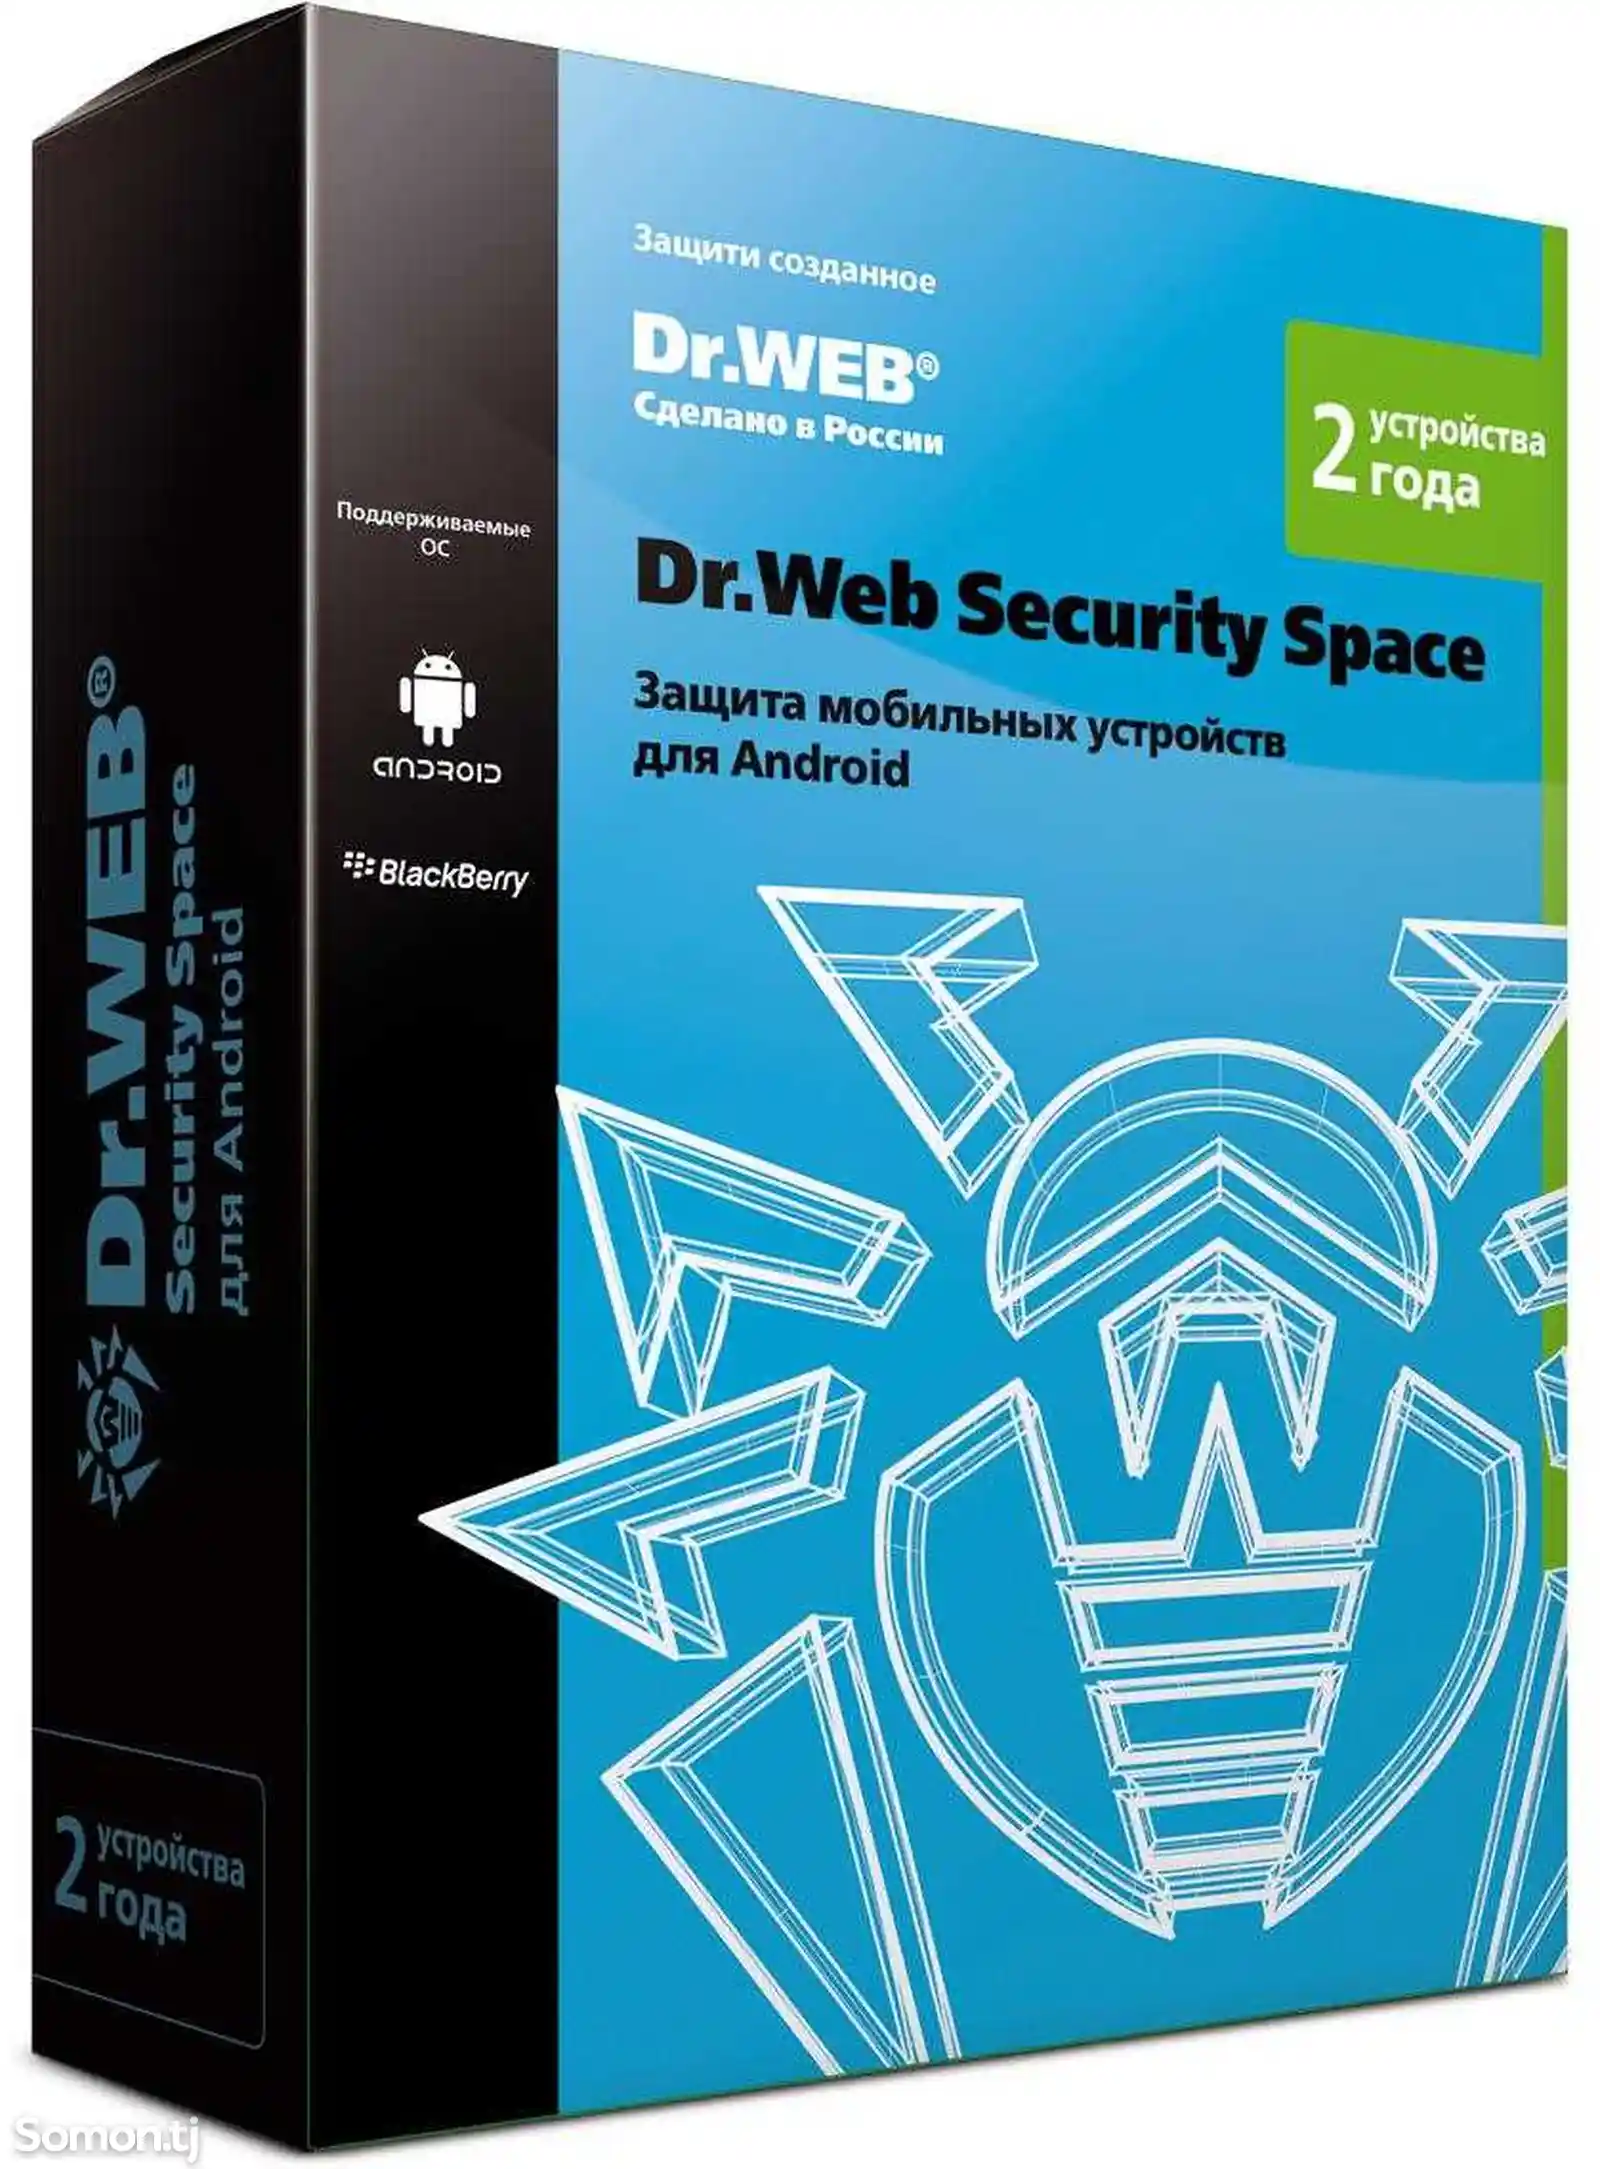 Антивирус DrWeb Mobile Security - иҷозатнома барои 1 мобайл, 1 сол